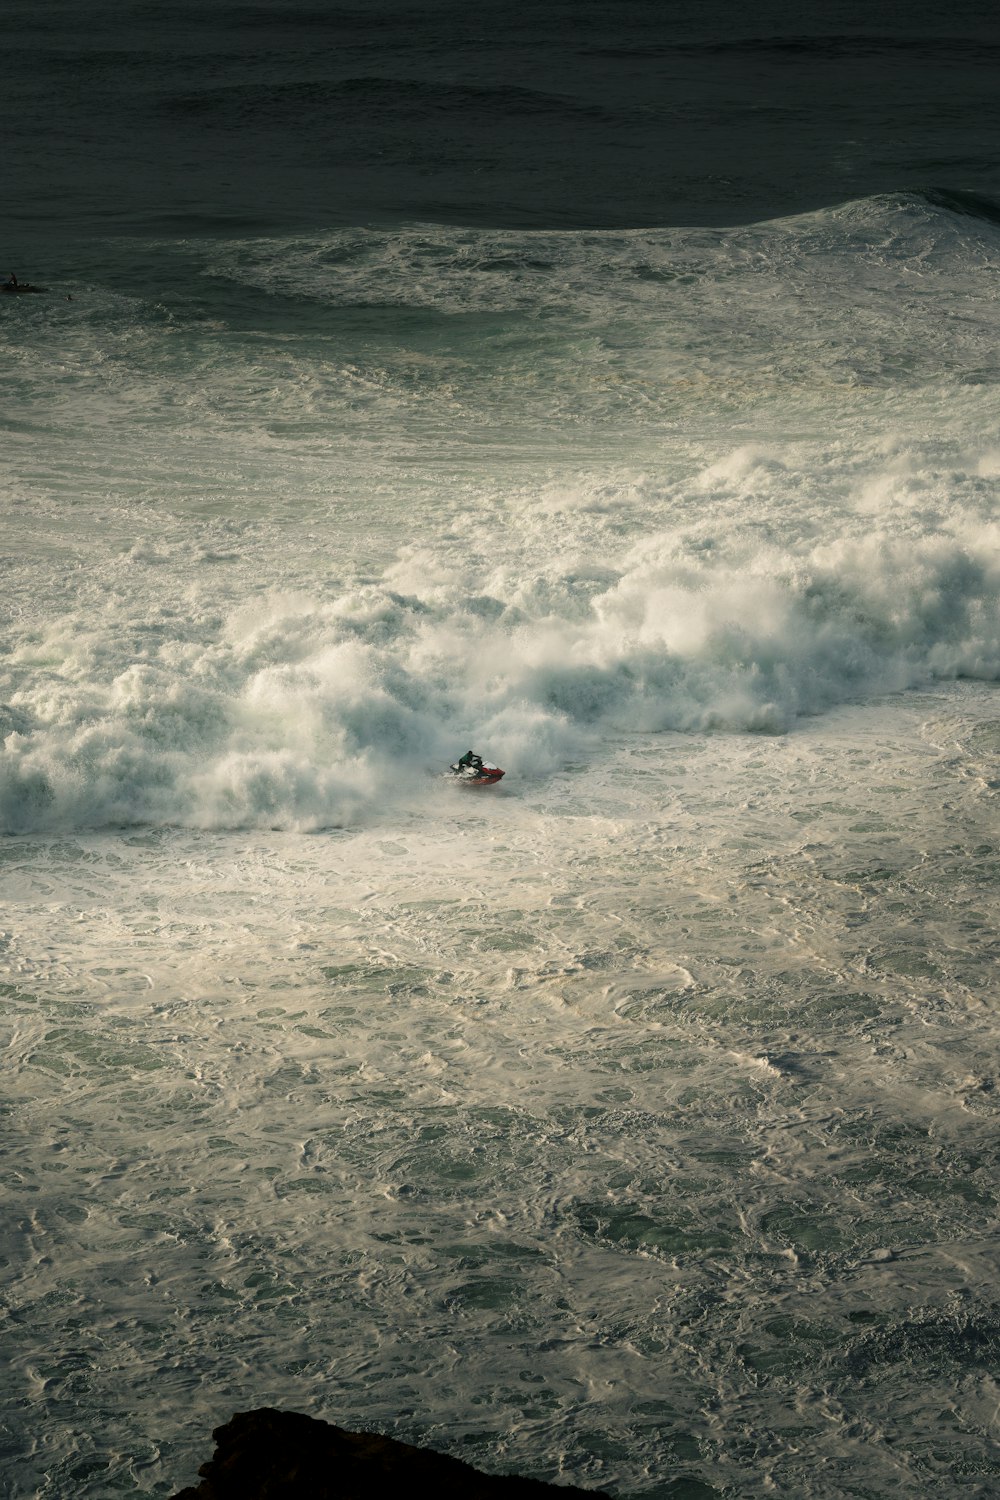 una persona montando una tabla de surf en una ola en el océano